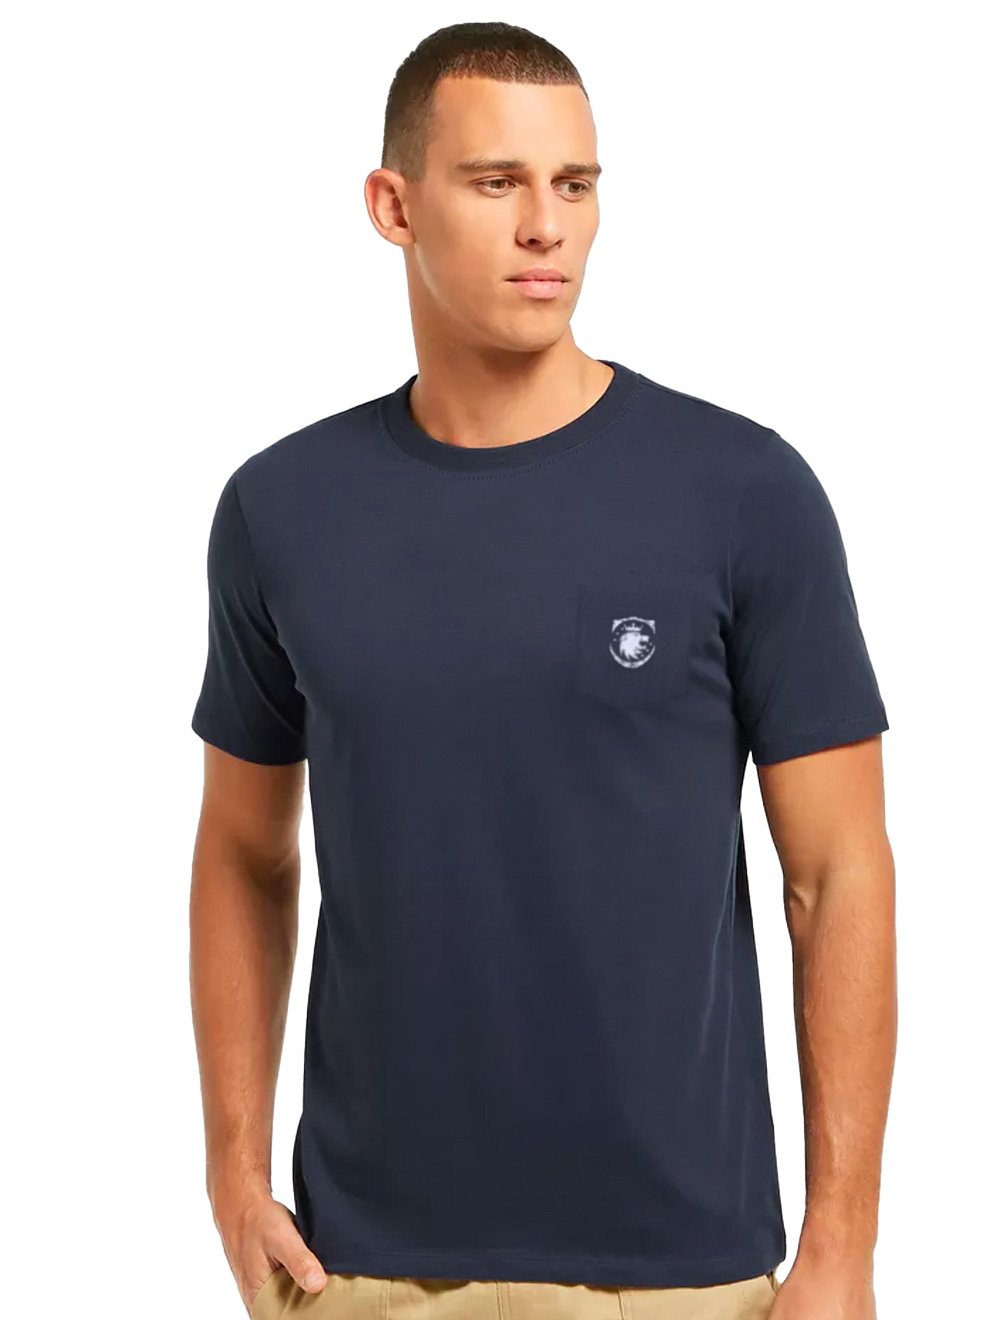 Camiseta Von der Volke Masculina Origineel Pocket Army Flame Azul Marinho